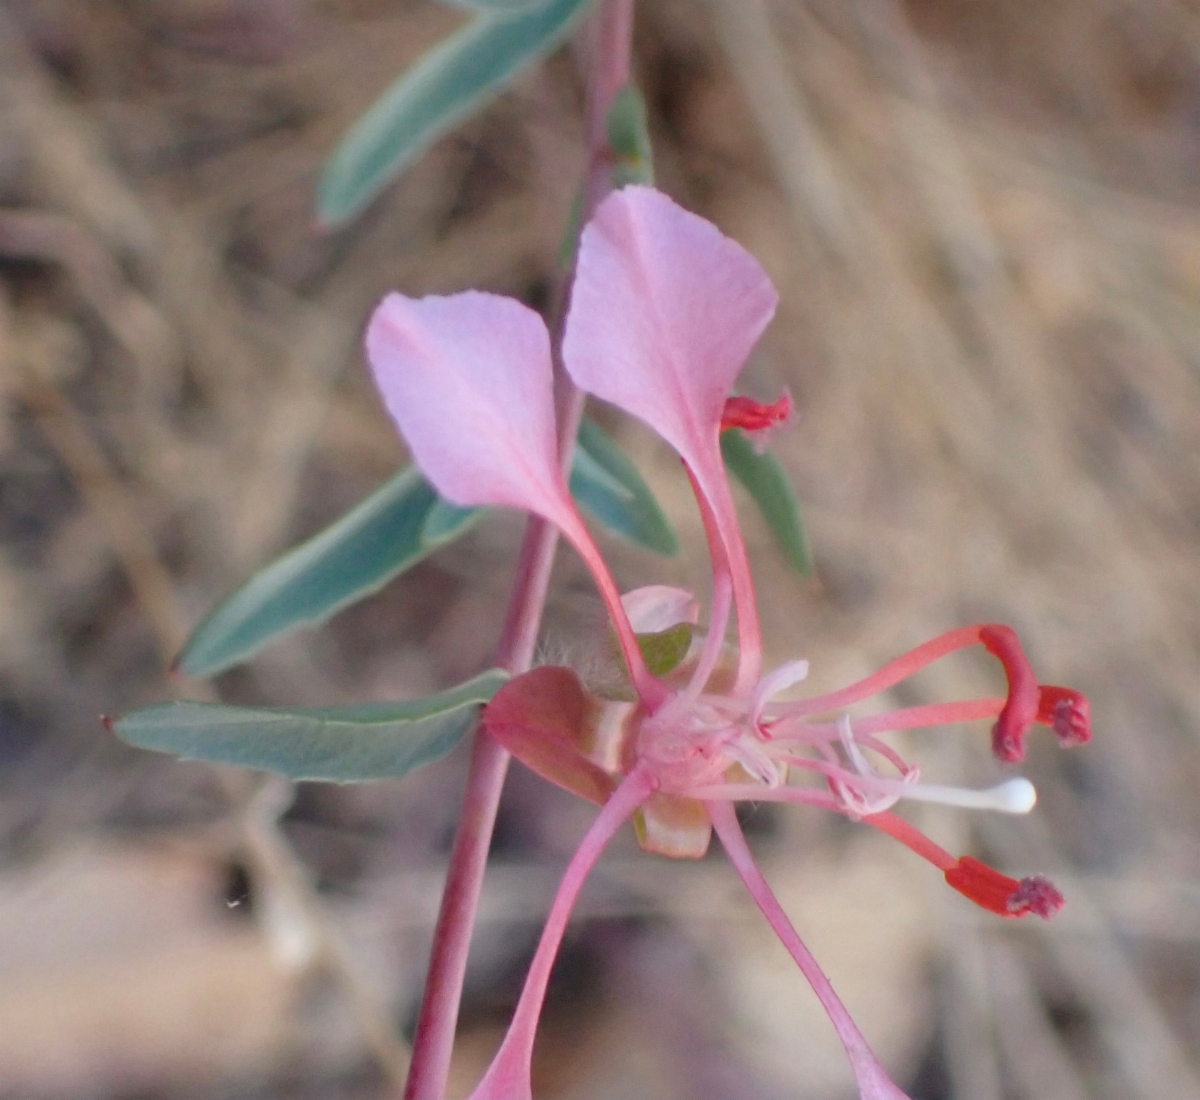 Clarkia unguiculata